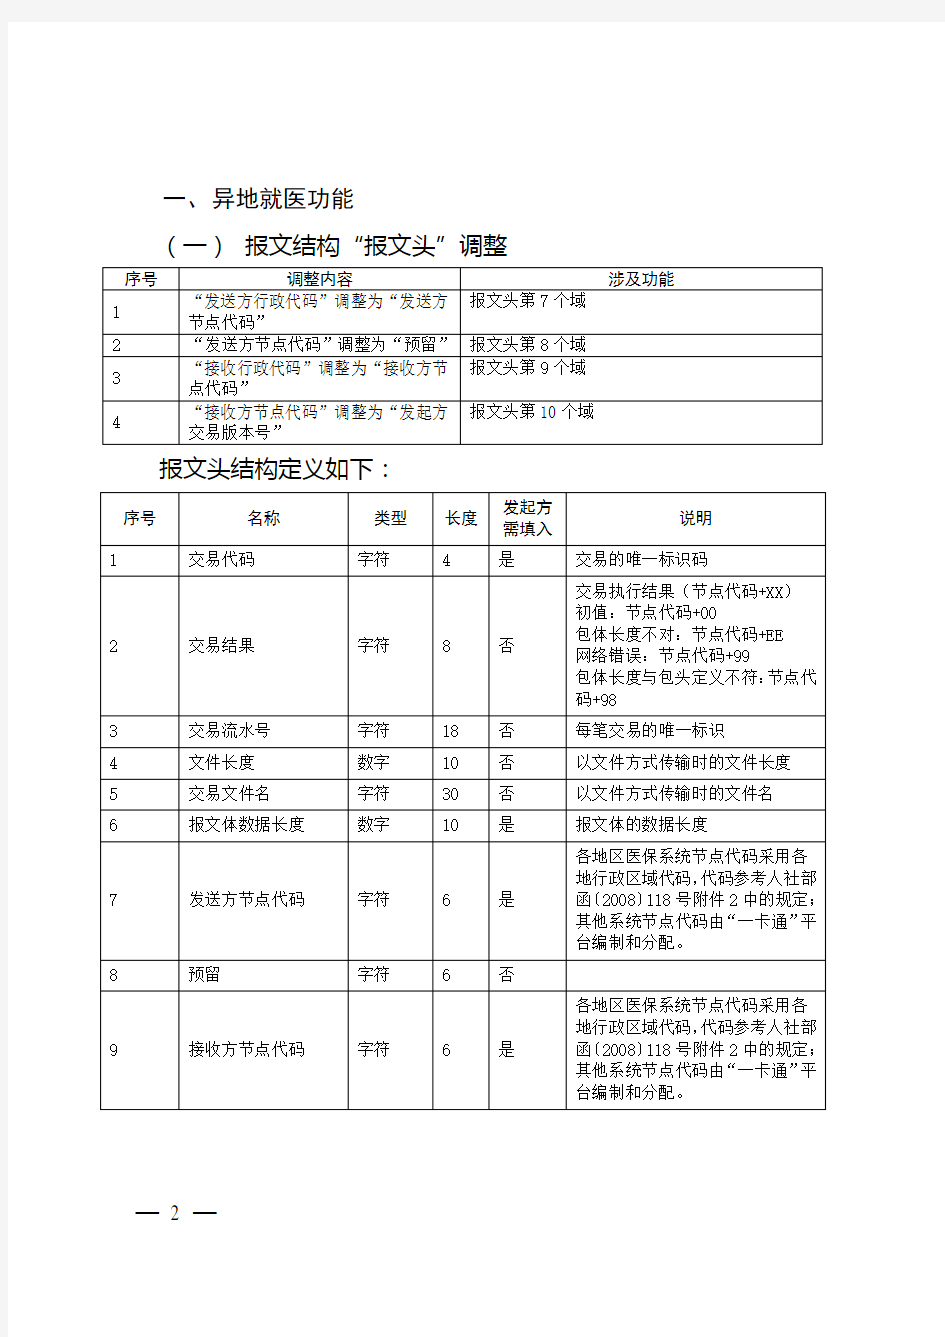 浙江省社会保障“一卡通”基本医疗保险异地就医接入规范V20补充说明